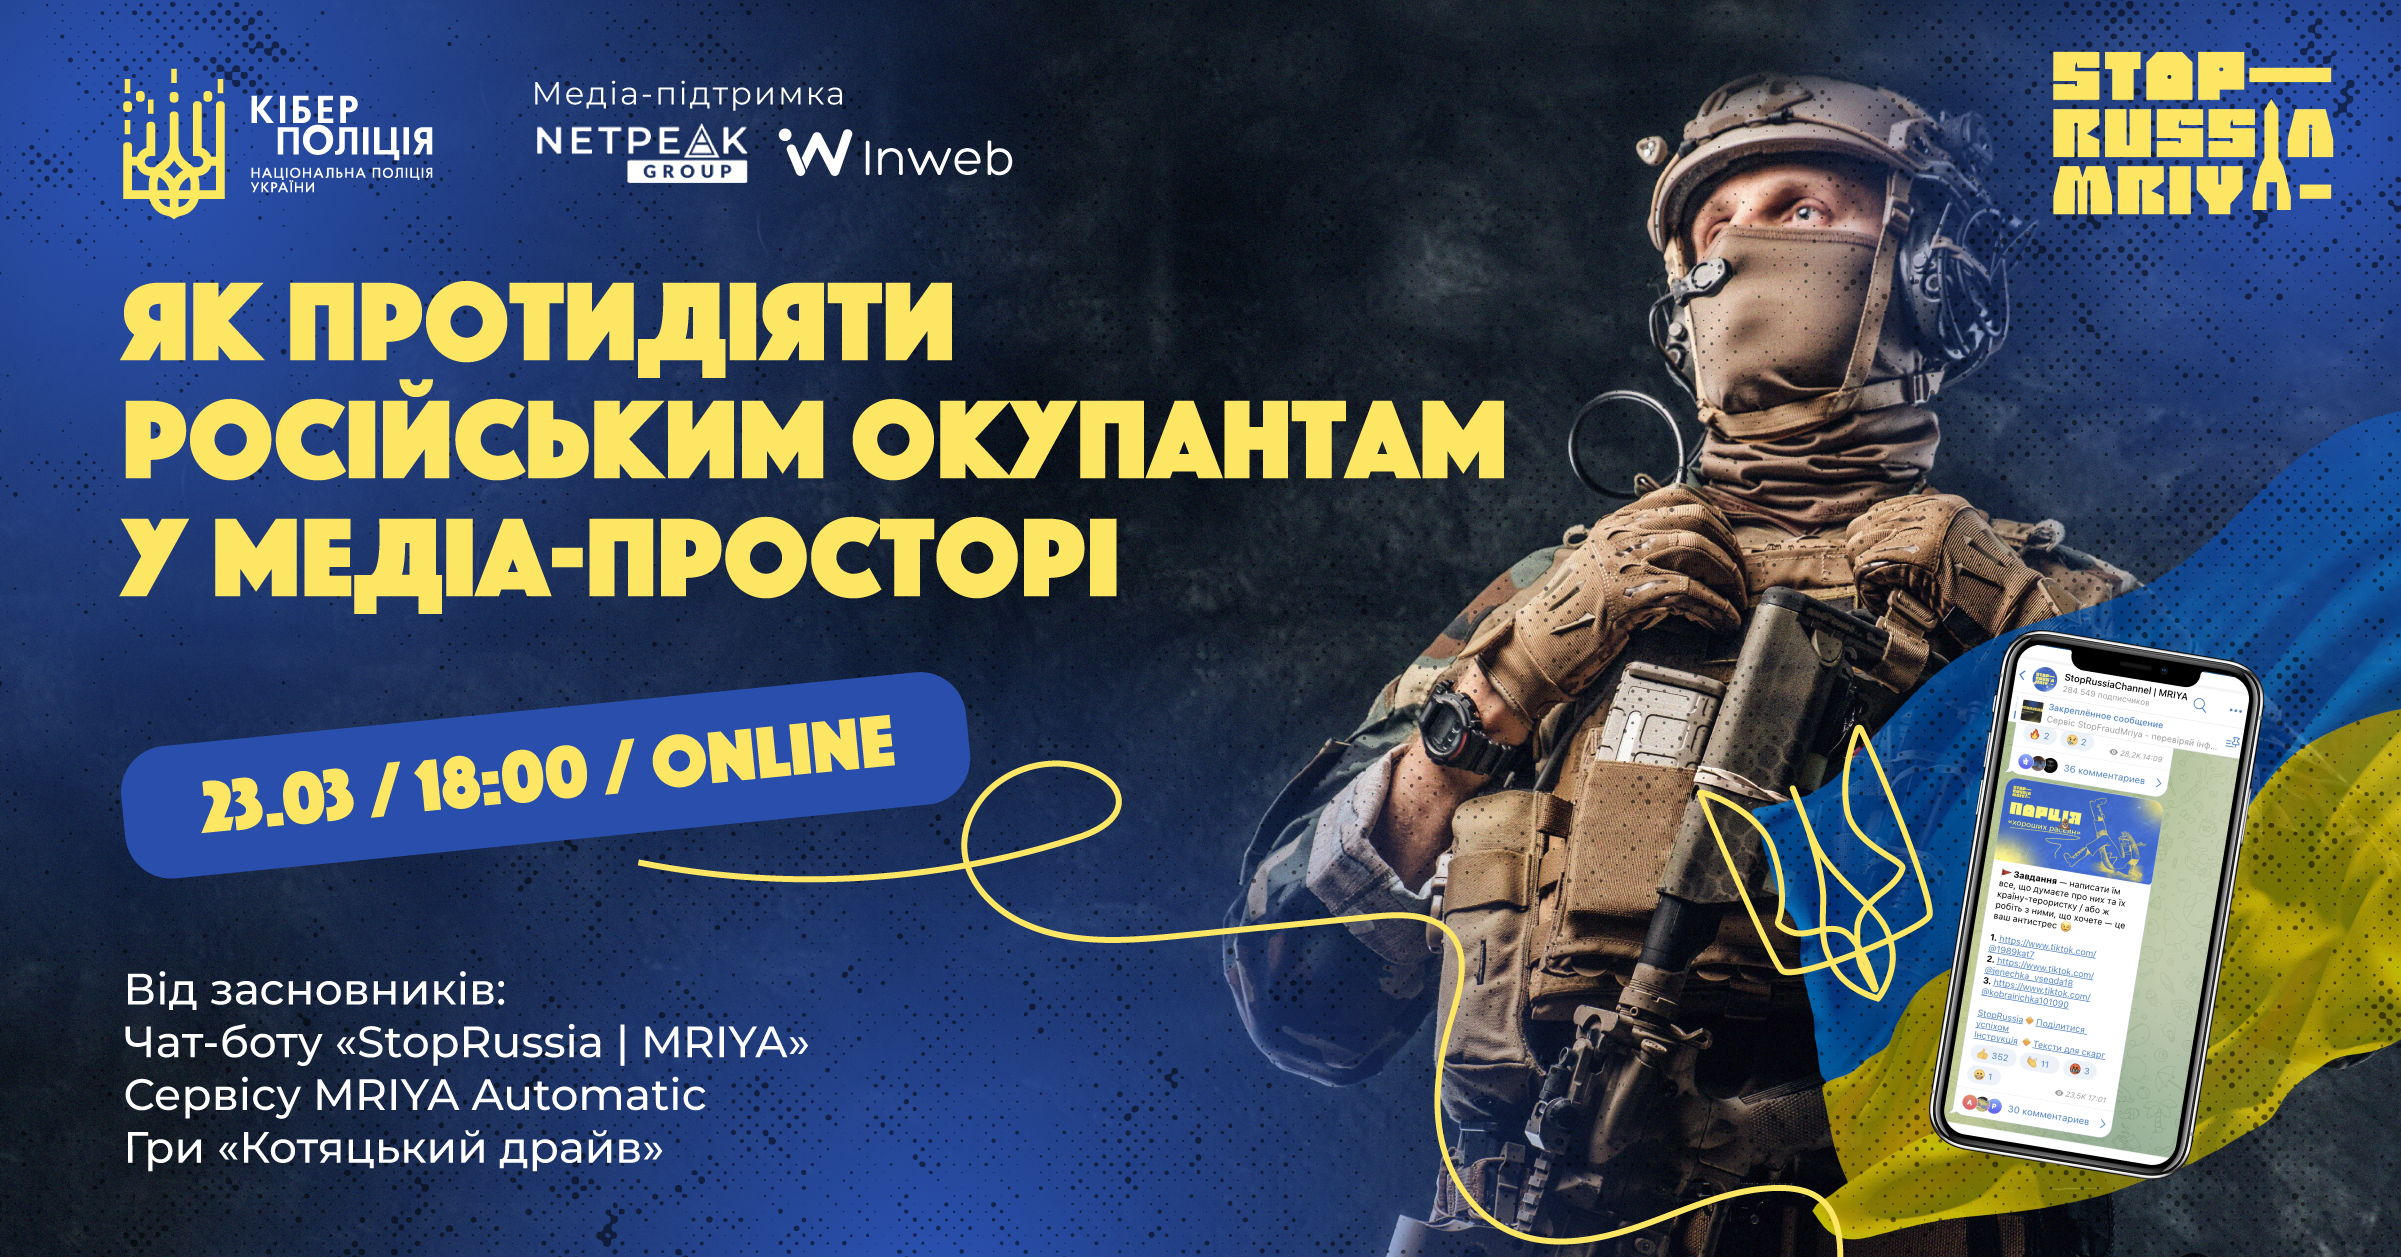 🪖 Кіберполіція за медіа-підтримки Inweb проведе презентацію чат-бота «StopRussia | MRIYA» для протидії російським інформаційним атакам